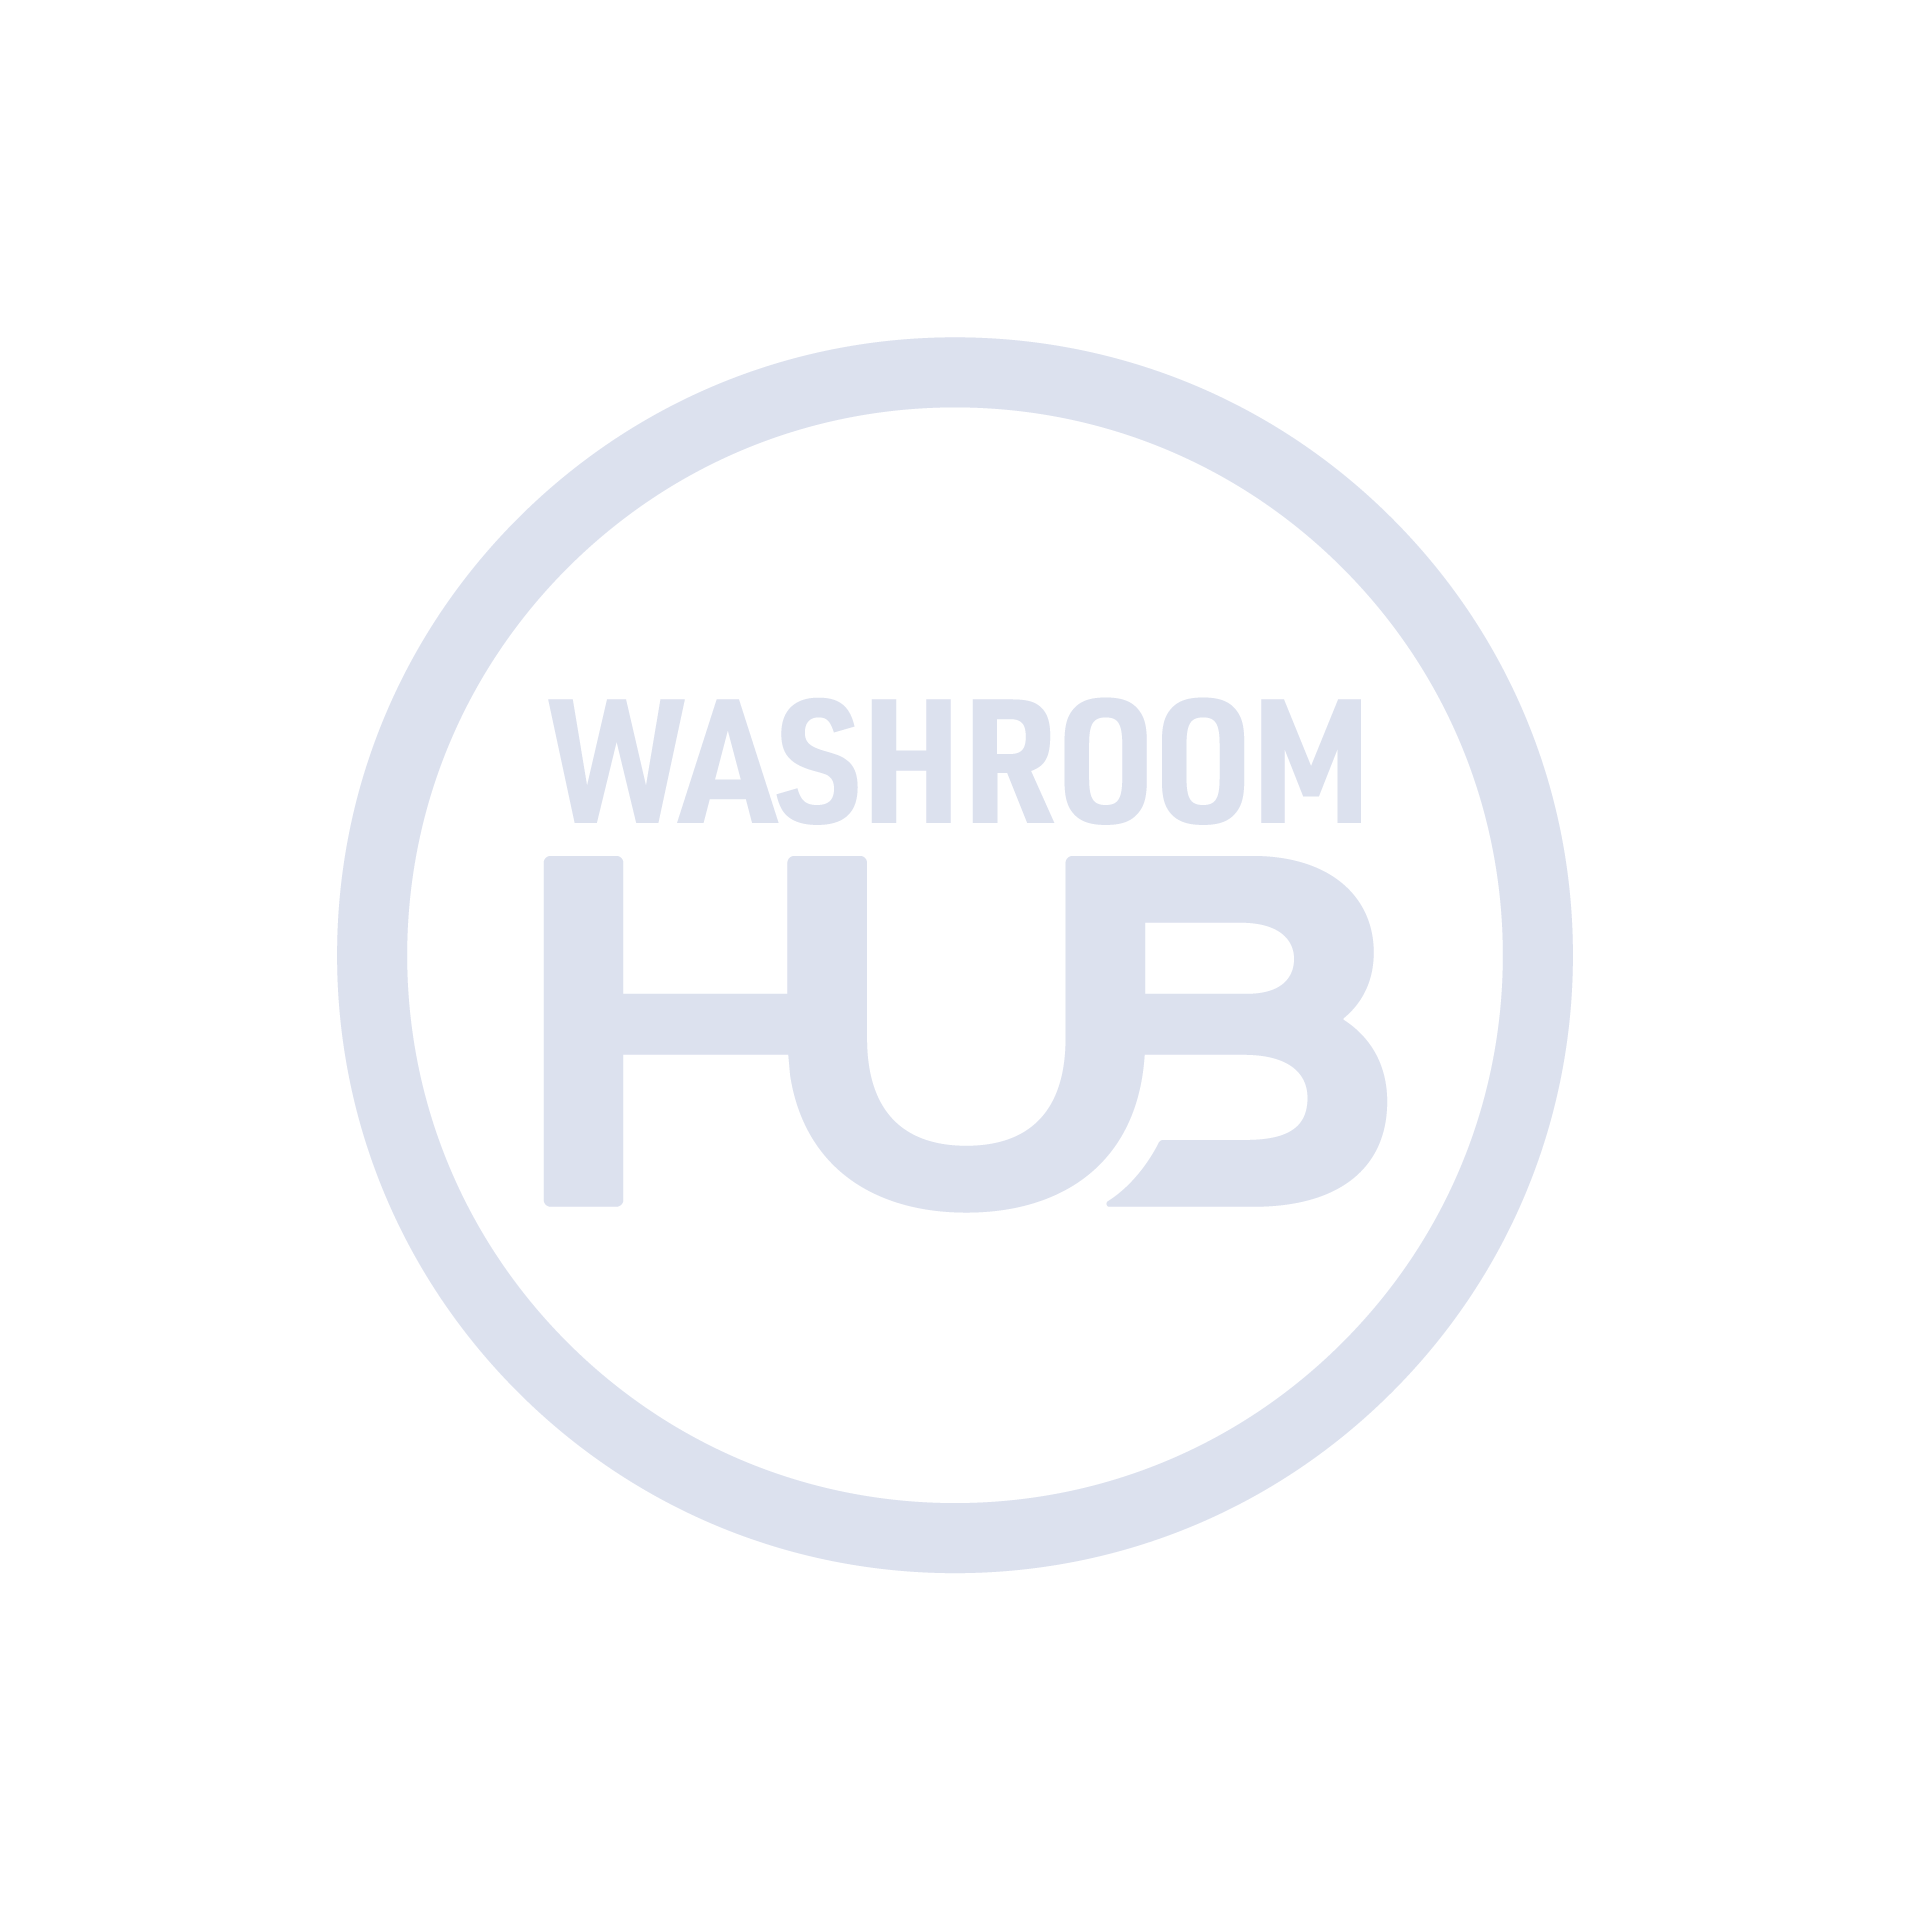 Washroom hub dispenser stand - foaming sanitiser